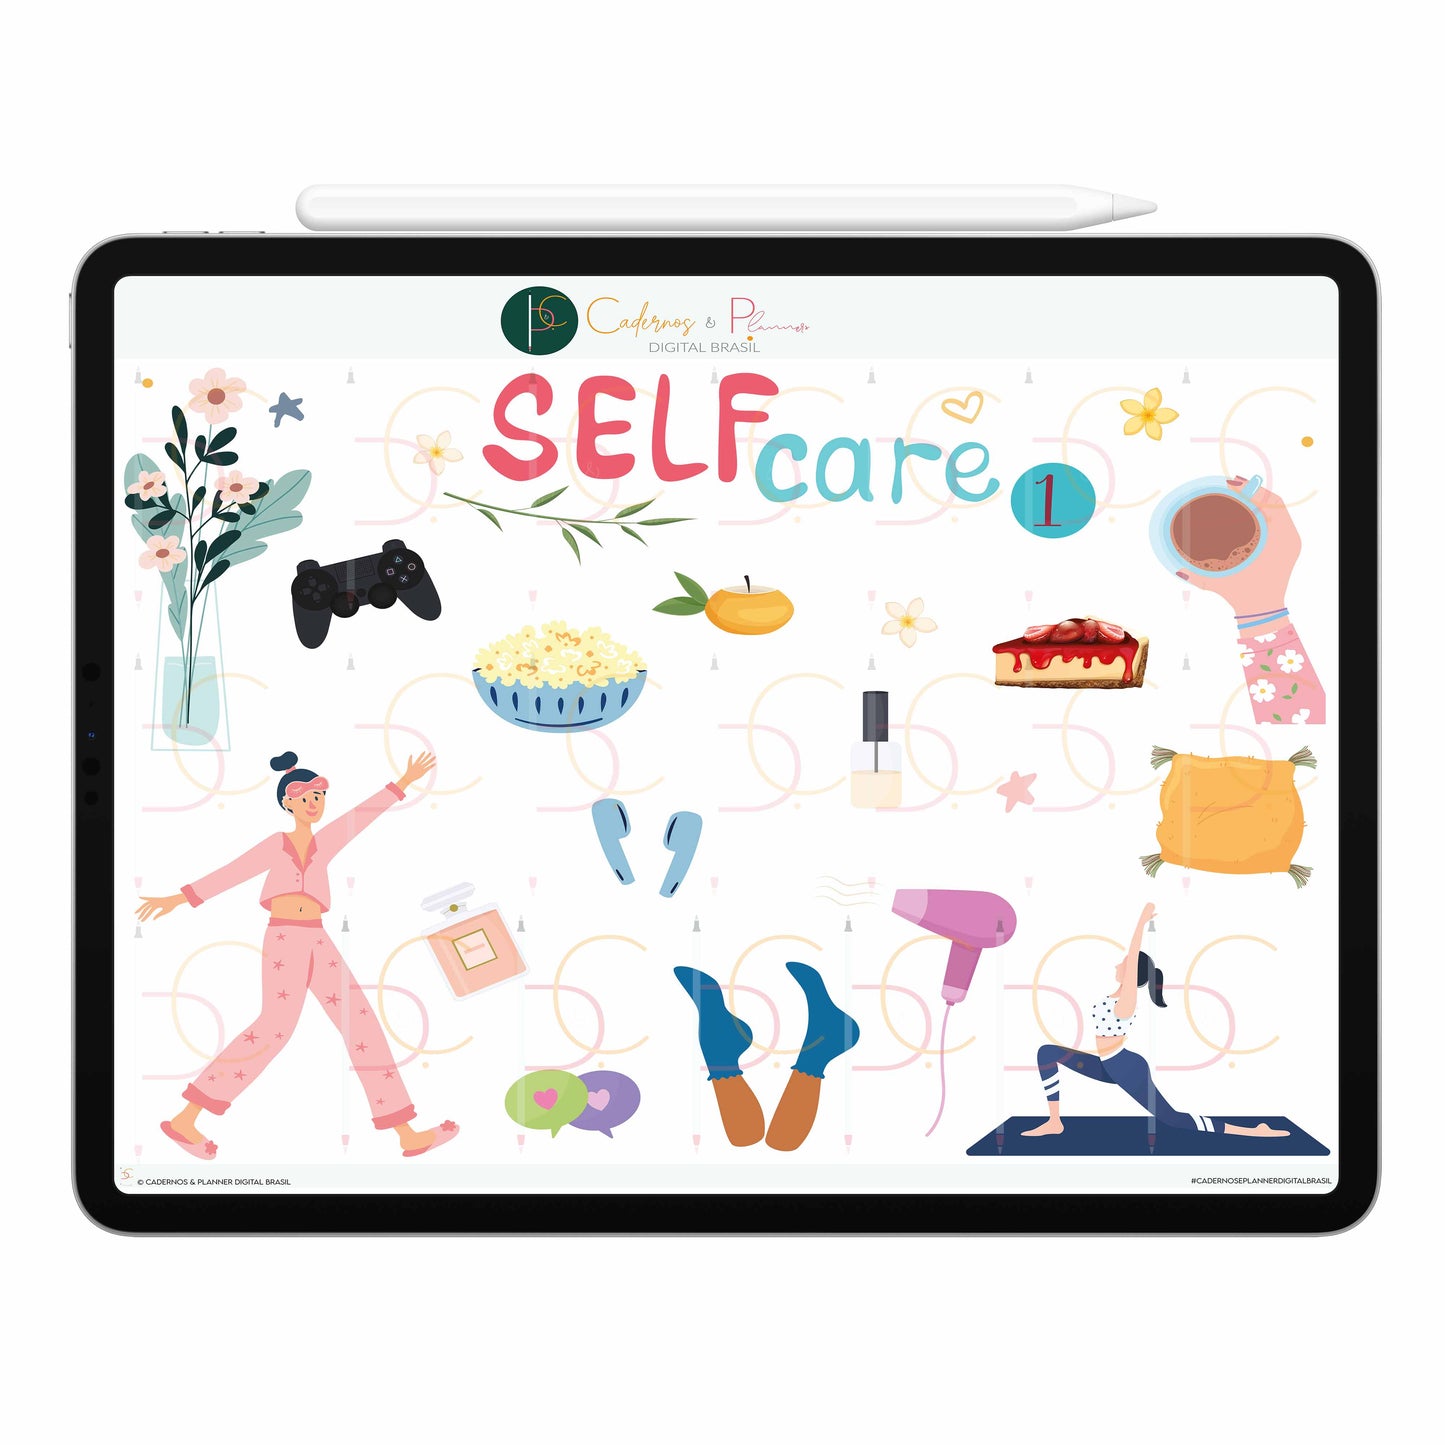 Stickers Adesivos Digital Self Care, Cuidado Pessoal, Autocuidado, Gratidão • Planner Digital Caderno Digital • iPad Tablet • GoodNotes Noteshelf